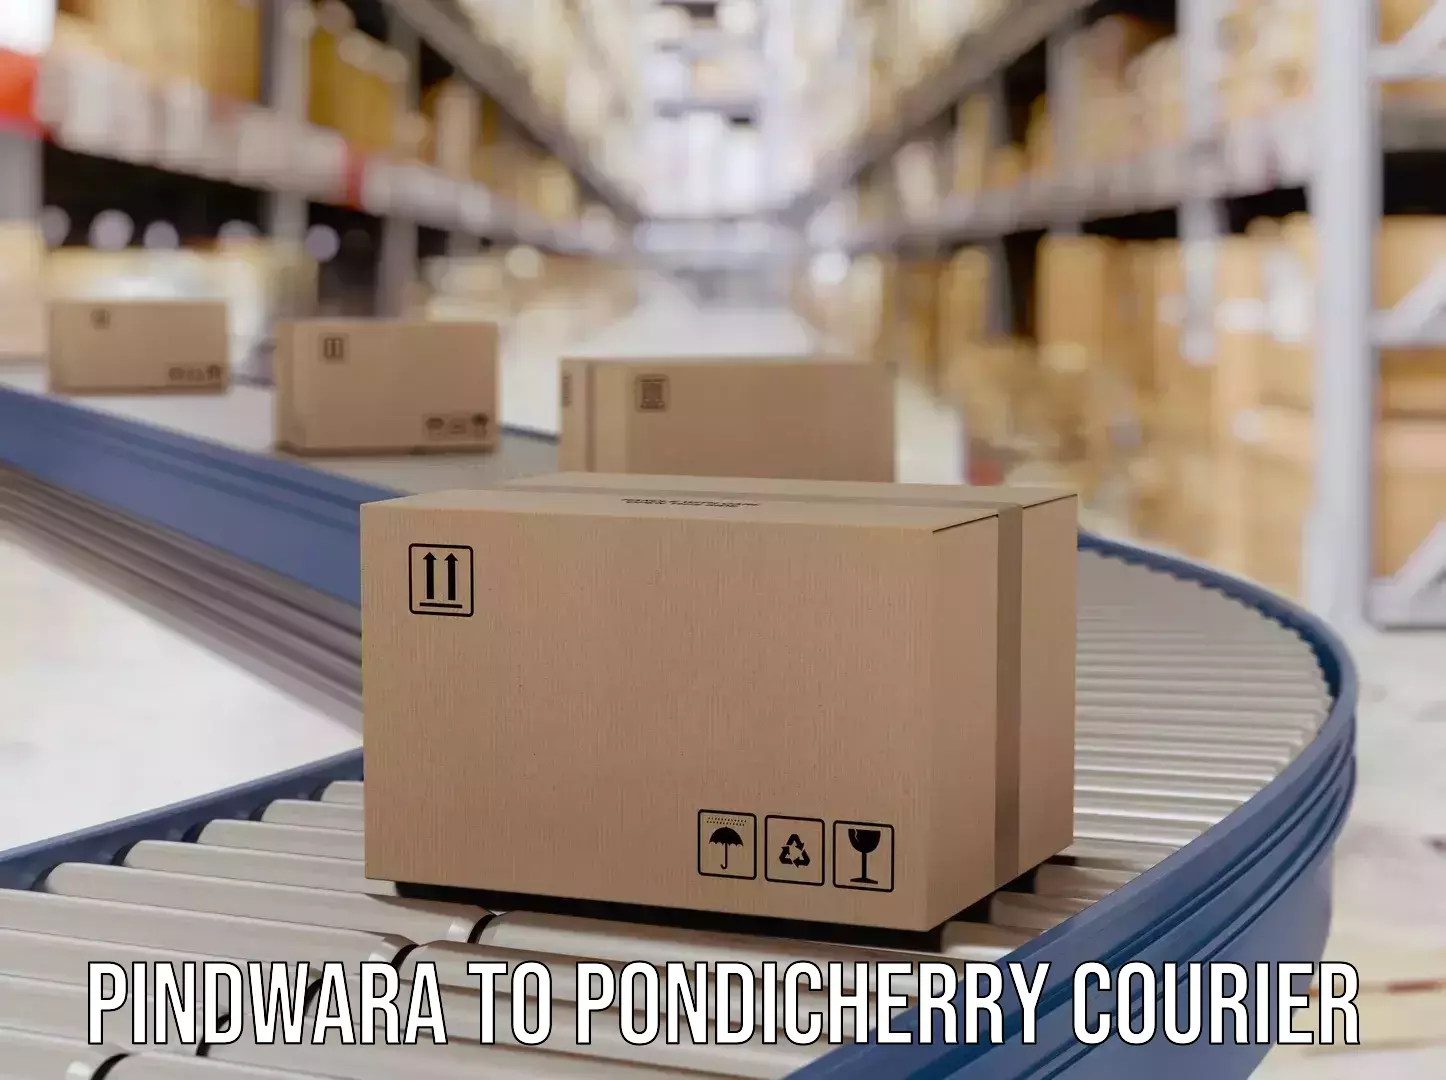 International courier rates Pindwara to NIT Puducherry